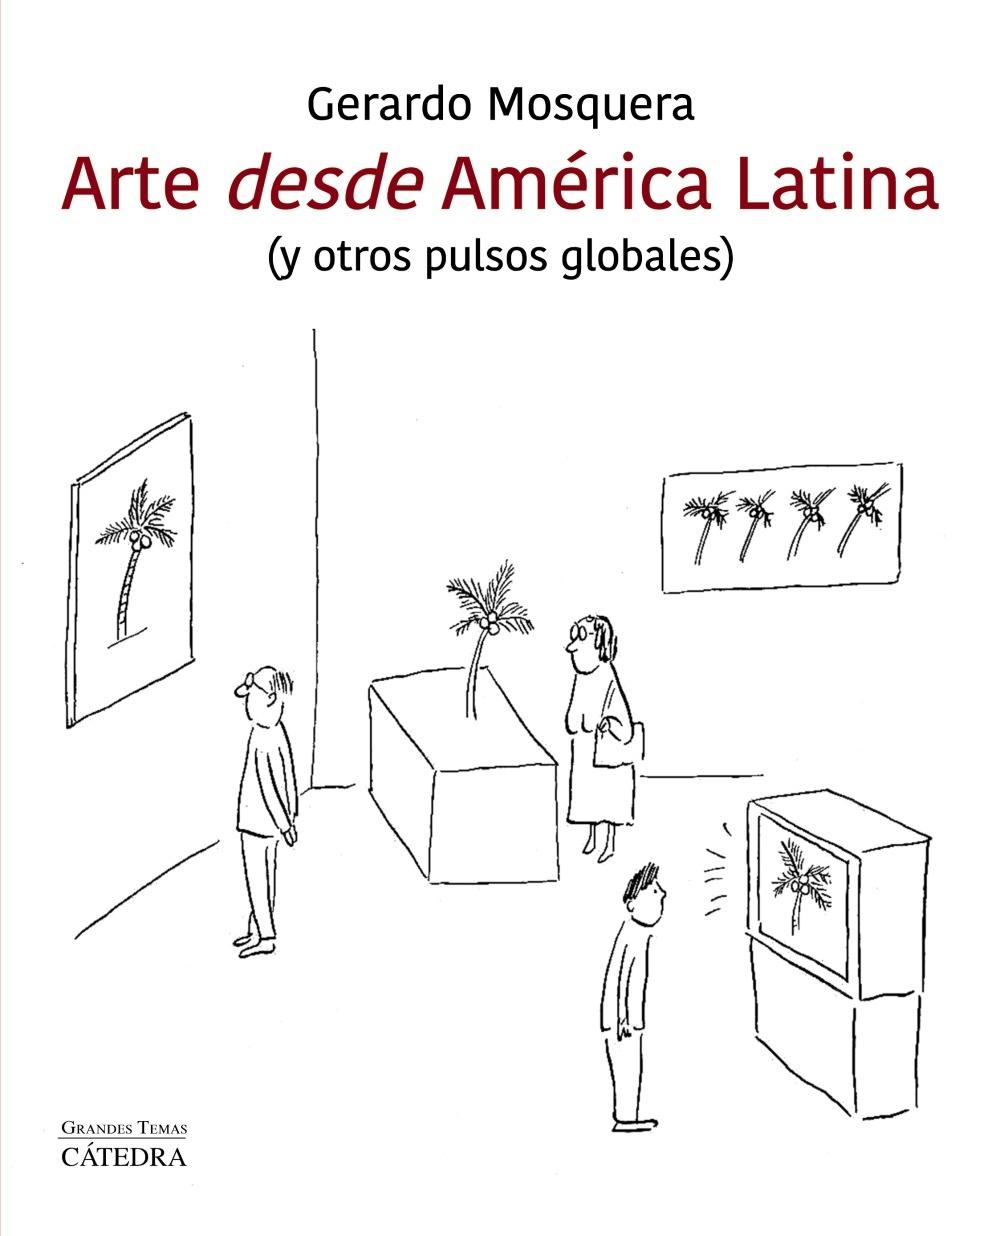 ARTE DESDE AMÉRICA LATINA "(Y OTROS PULSOS GLOBALES)". 